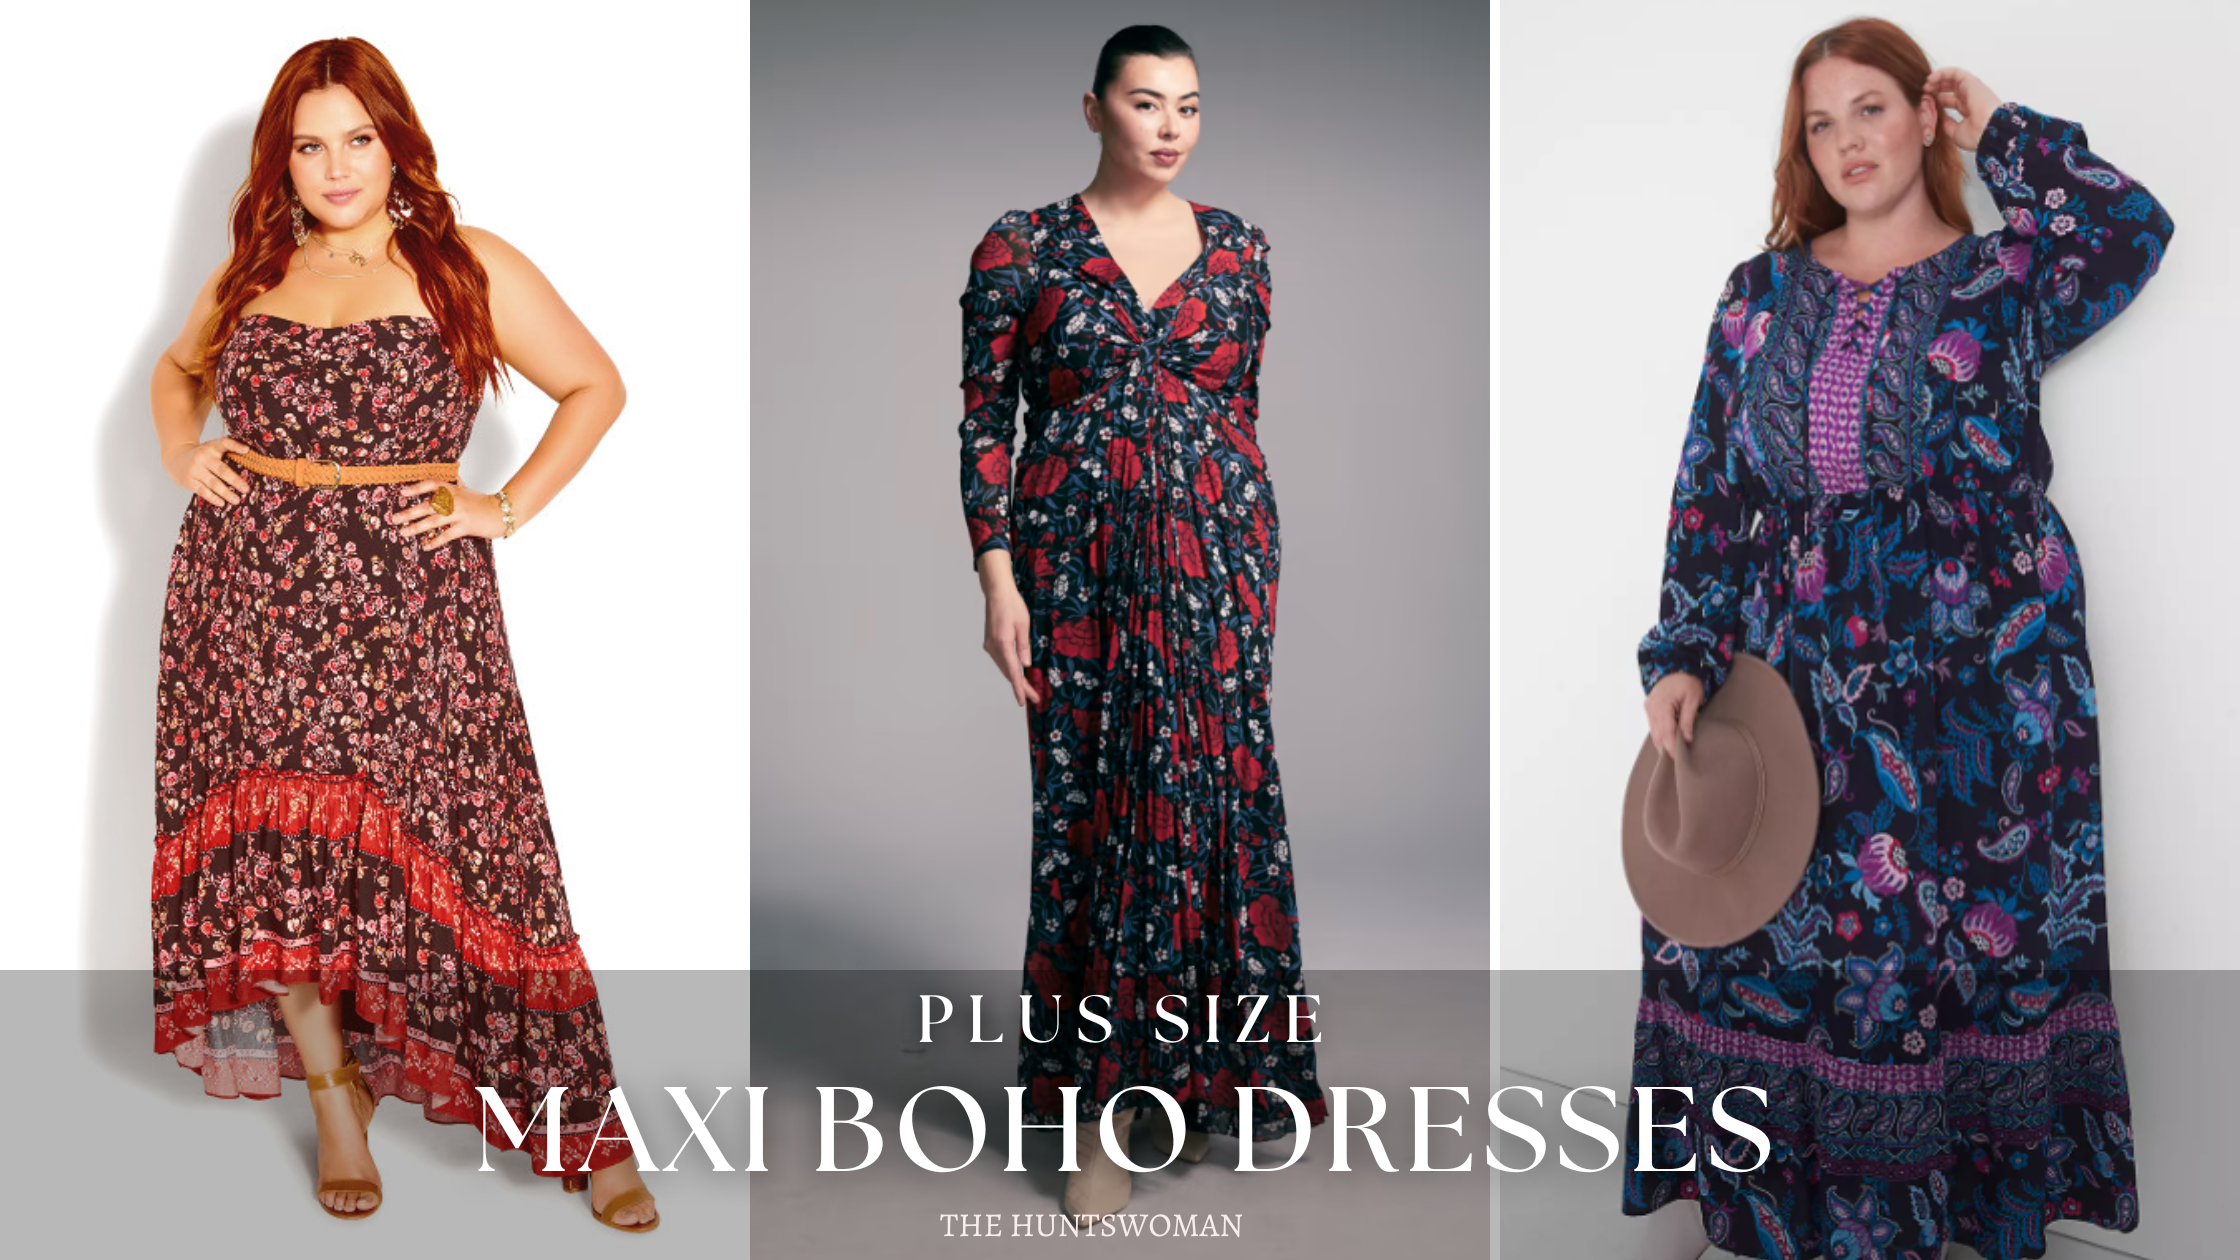 21+ Plus Size Maxi Boho Dresses  Where I Shop for Plus Size Boho Dresses!